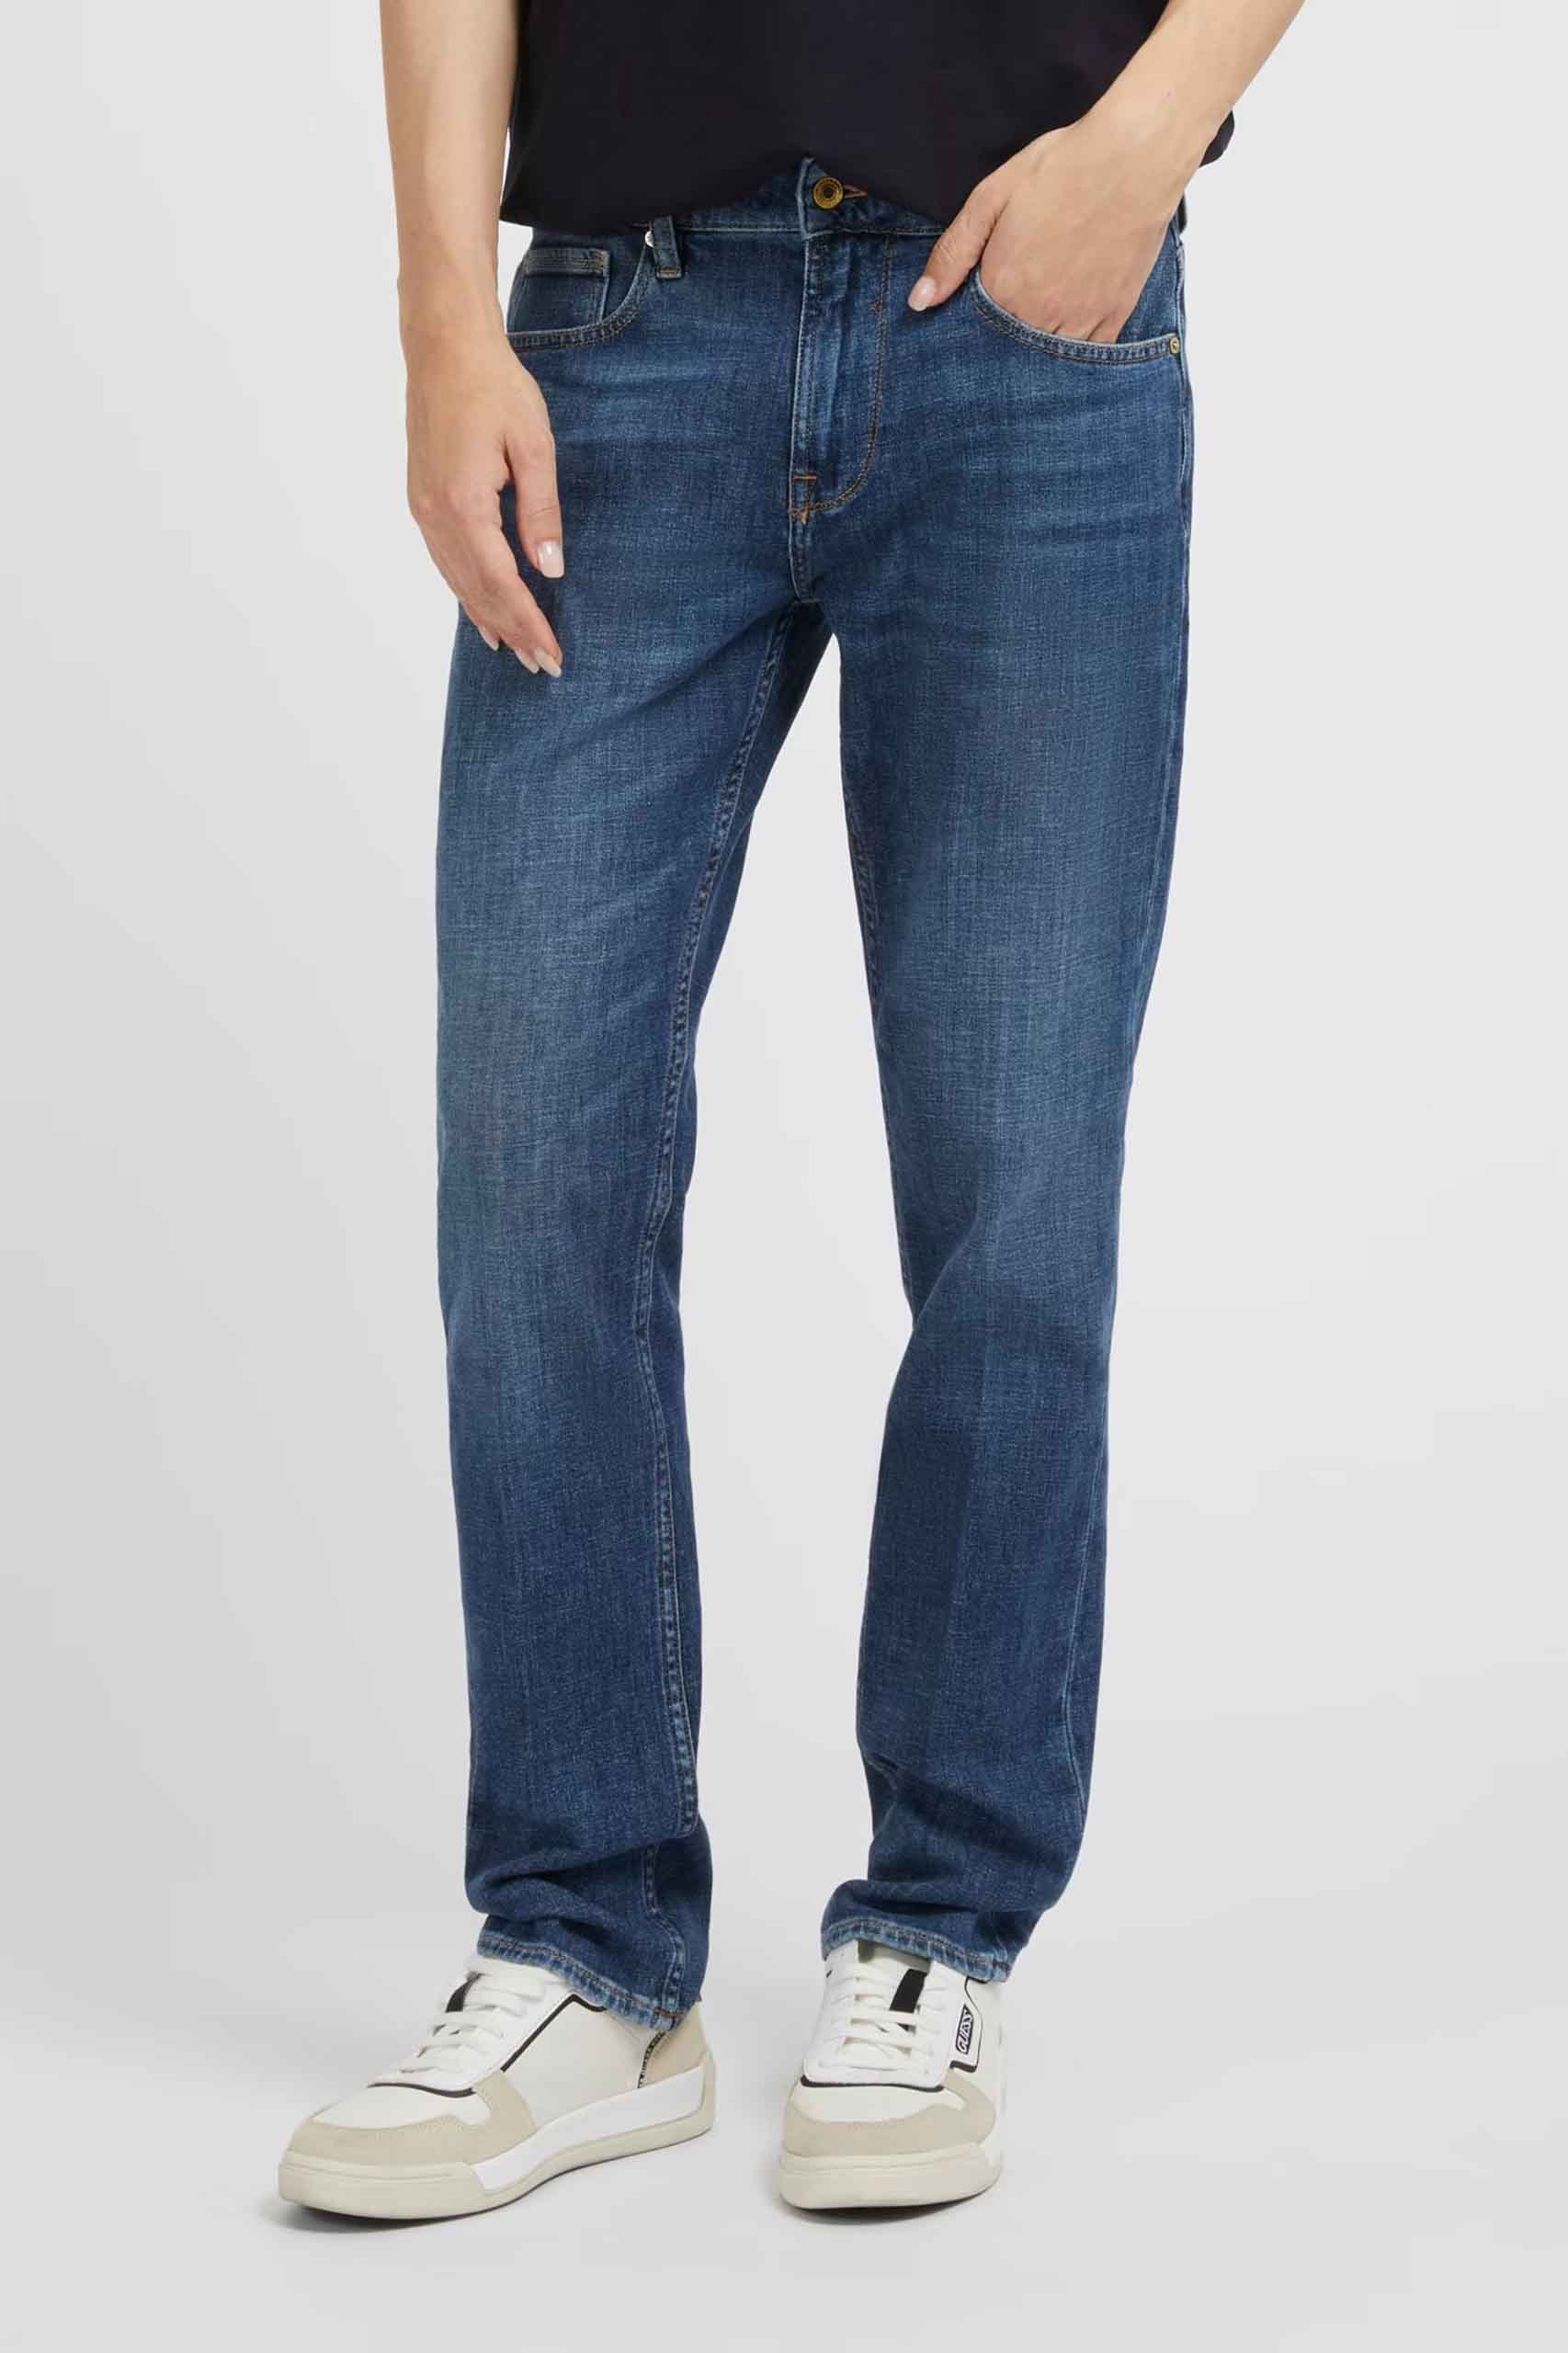 Pantalón de la marca Guess Jeans Jeans